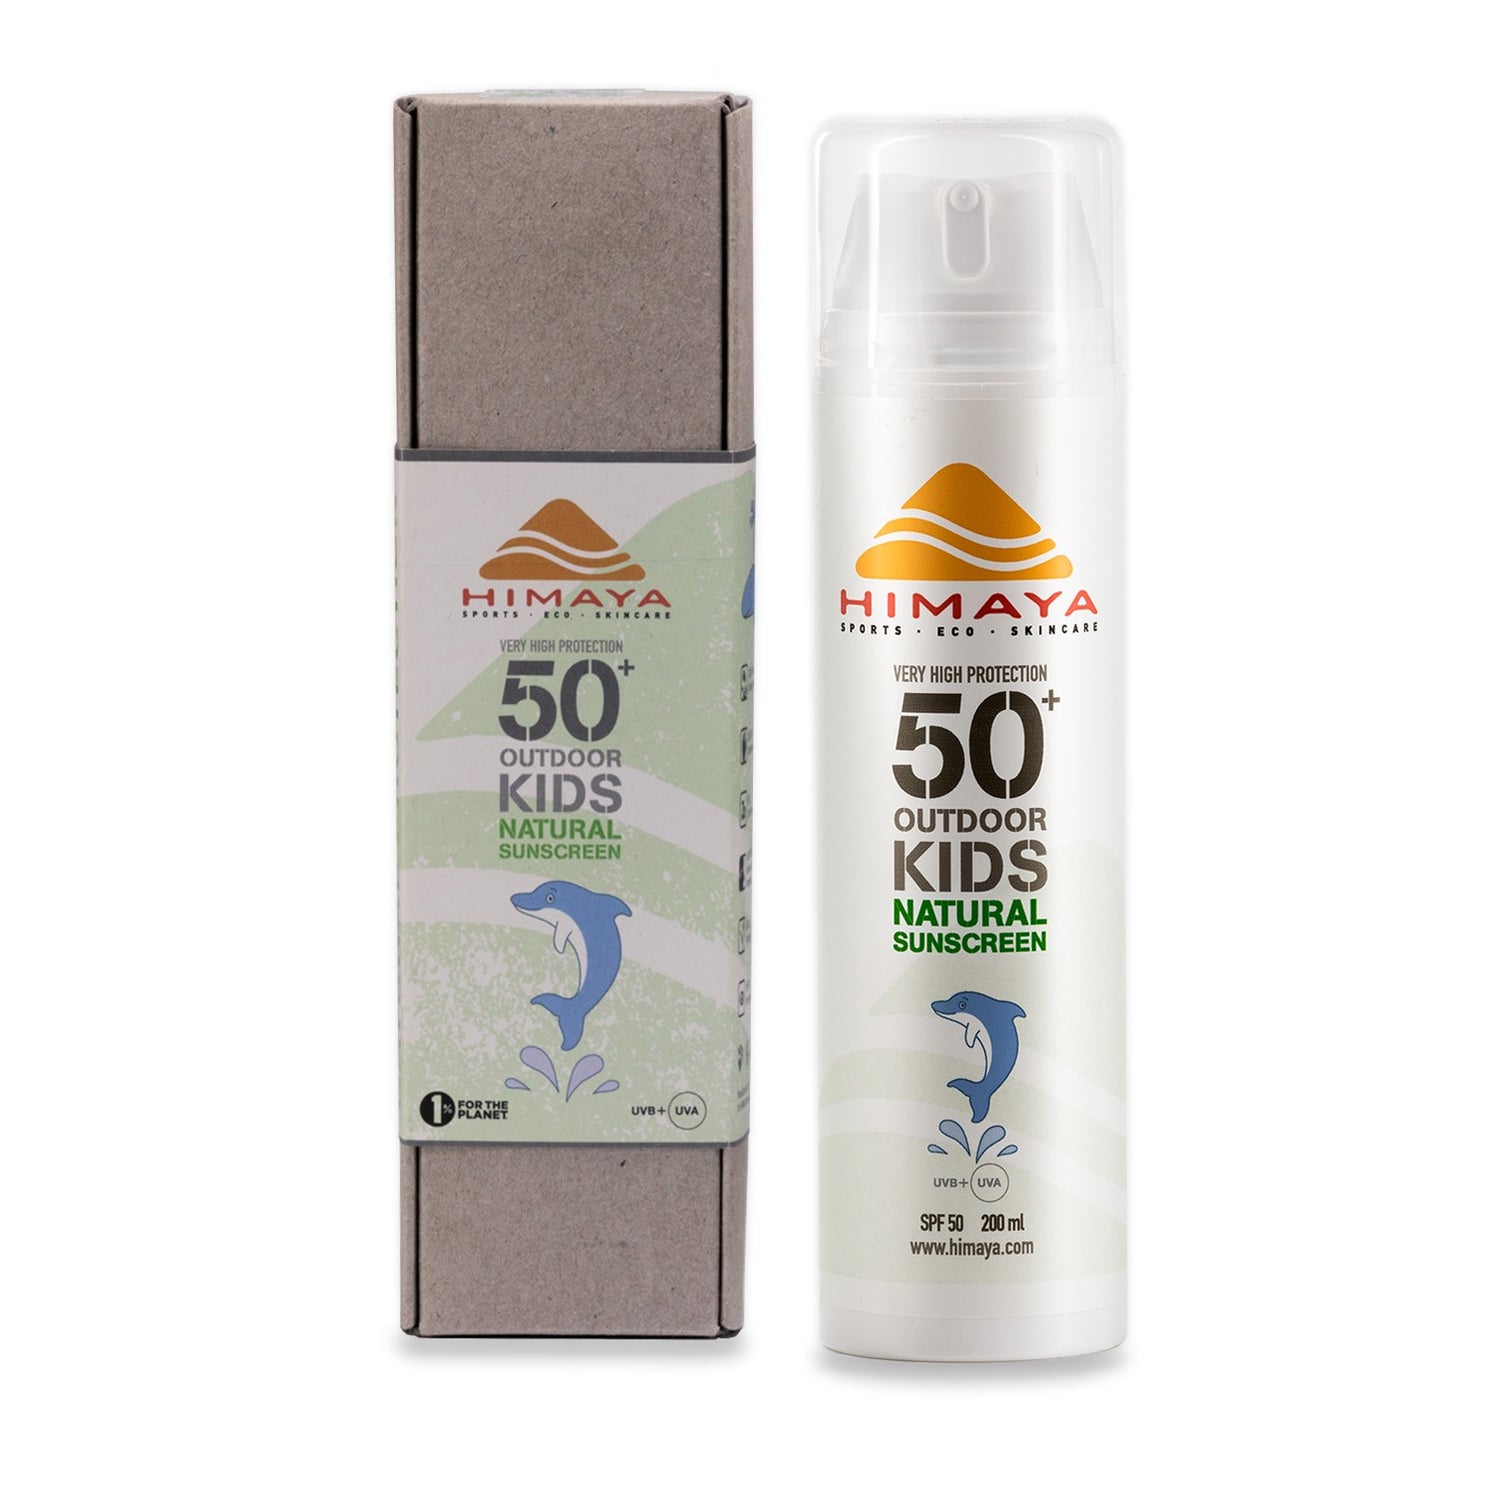 HIMAYA Natural Sunscreen Kids SPF 50+ 200ml – Mineral - Zinc - Reef Safe -Refillable Himaya